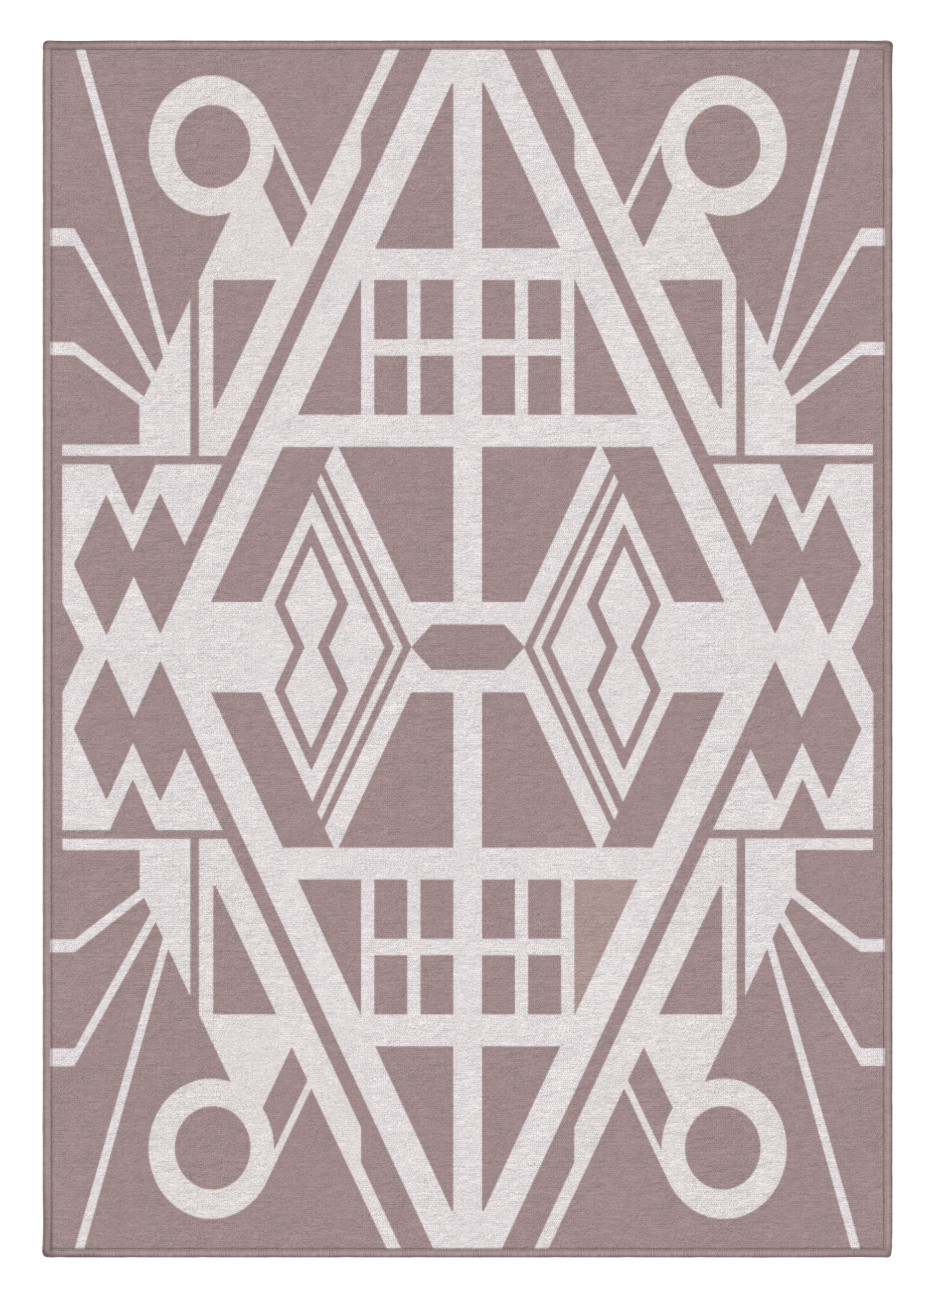 Dizajnový kusový koberec Mexico od Jindřicha Lípy - 140x200 cm GDmats koberce 